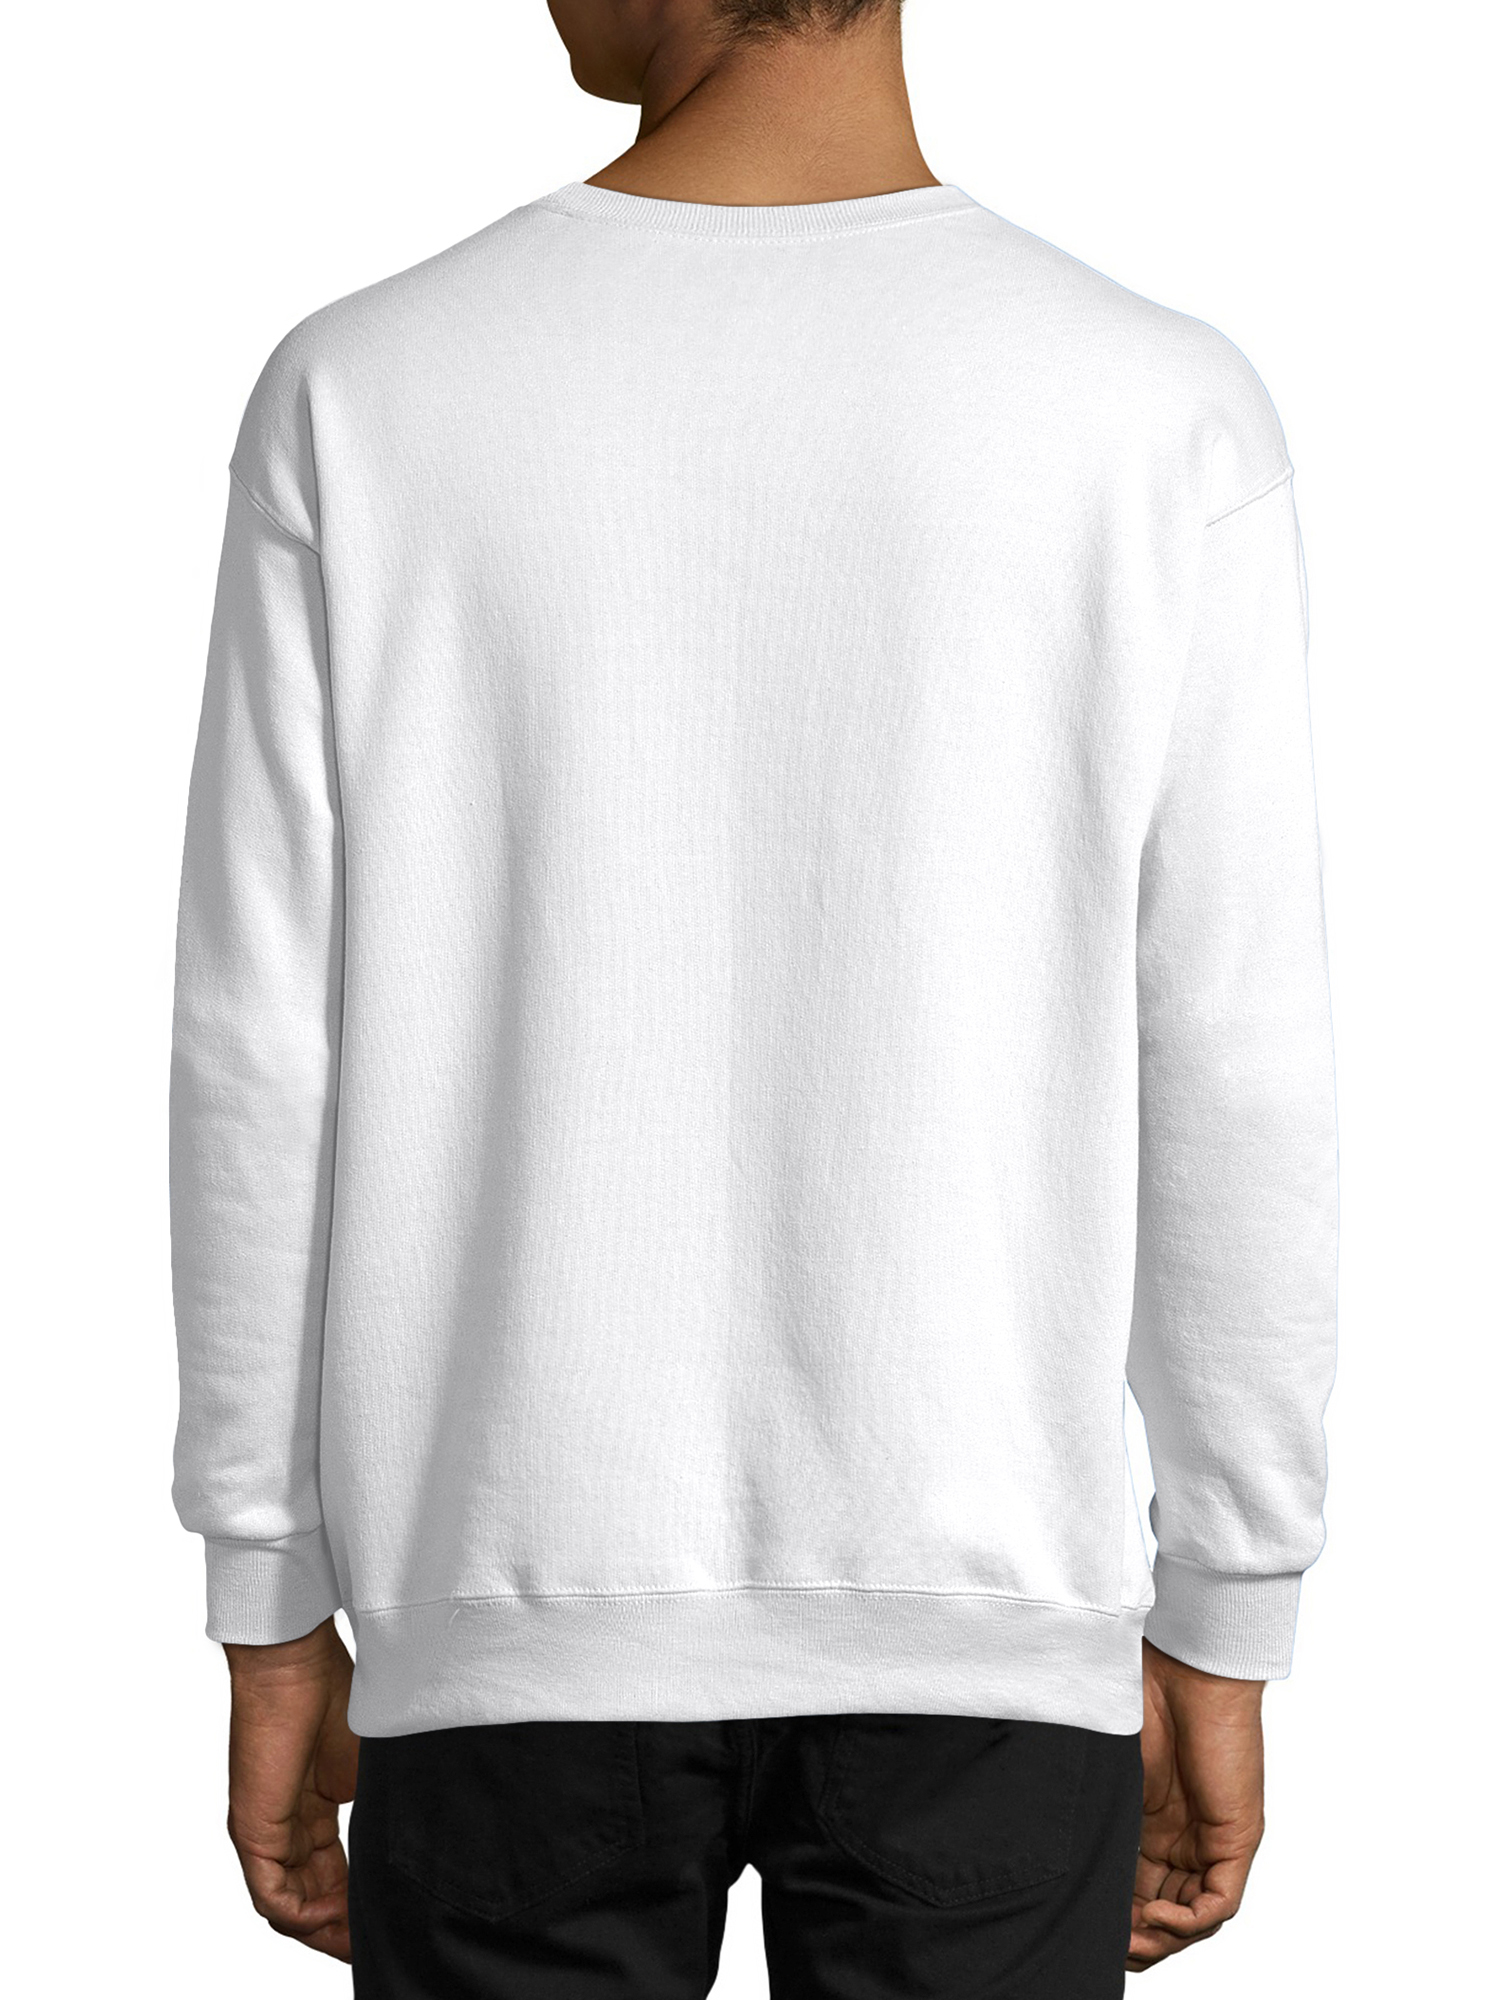 Hanes Men's and Big Men's Ecosmart Fleece Sweatshirt, up to Size 5XL - image 2 of 6